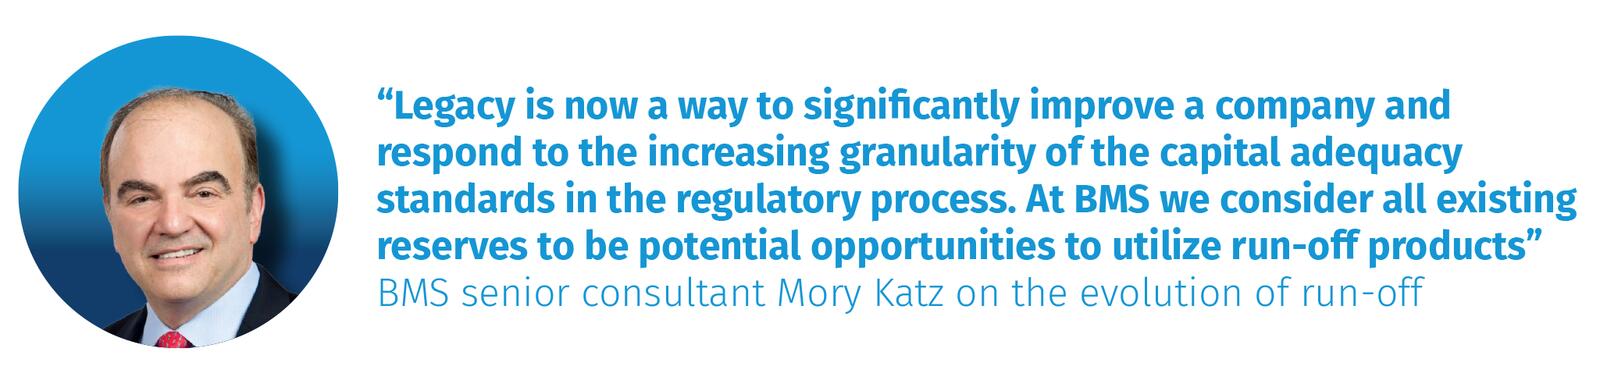 BMS senior consultant Mory Katz on the evolution of run-off